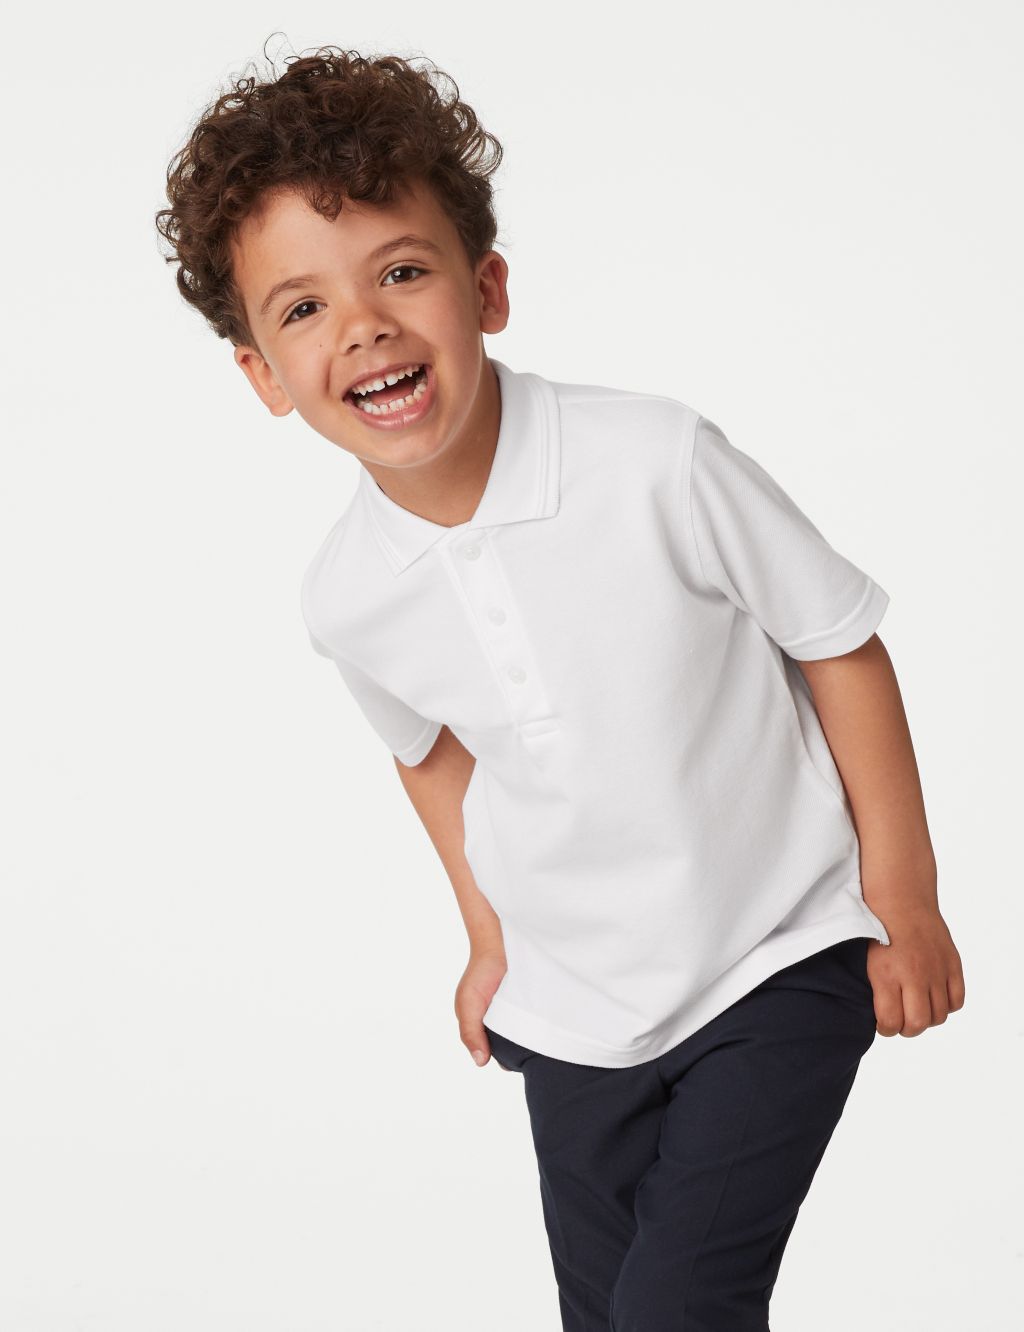 2pk Unisex Easy Dressing School Polo Shirts (3-18 Yrs) image 3